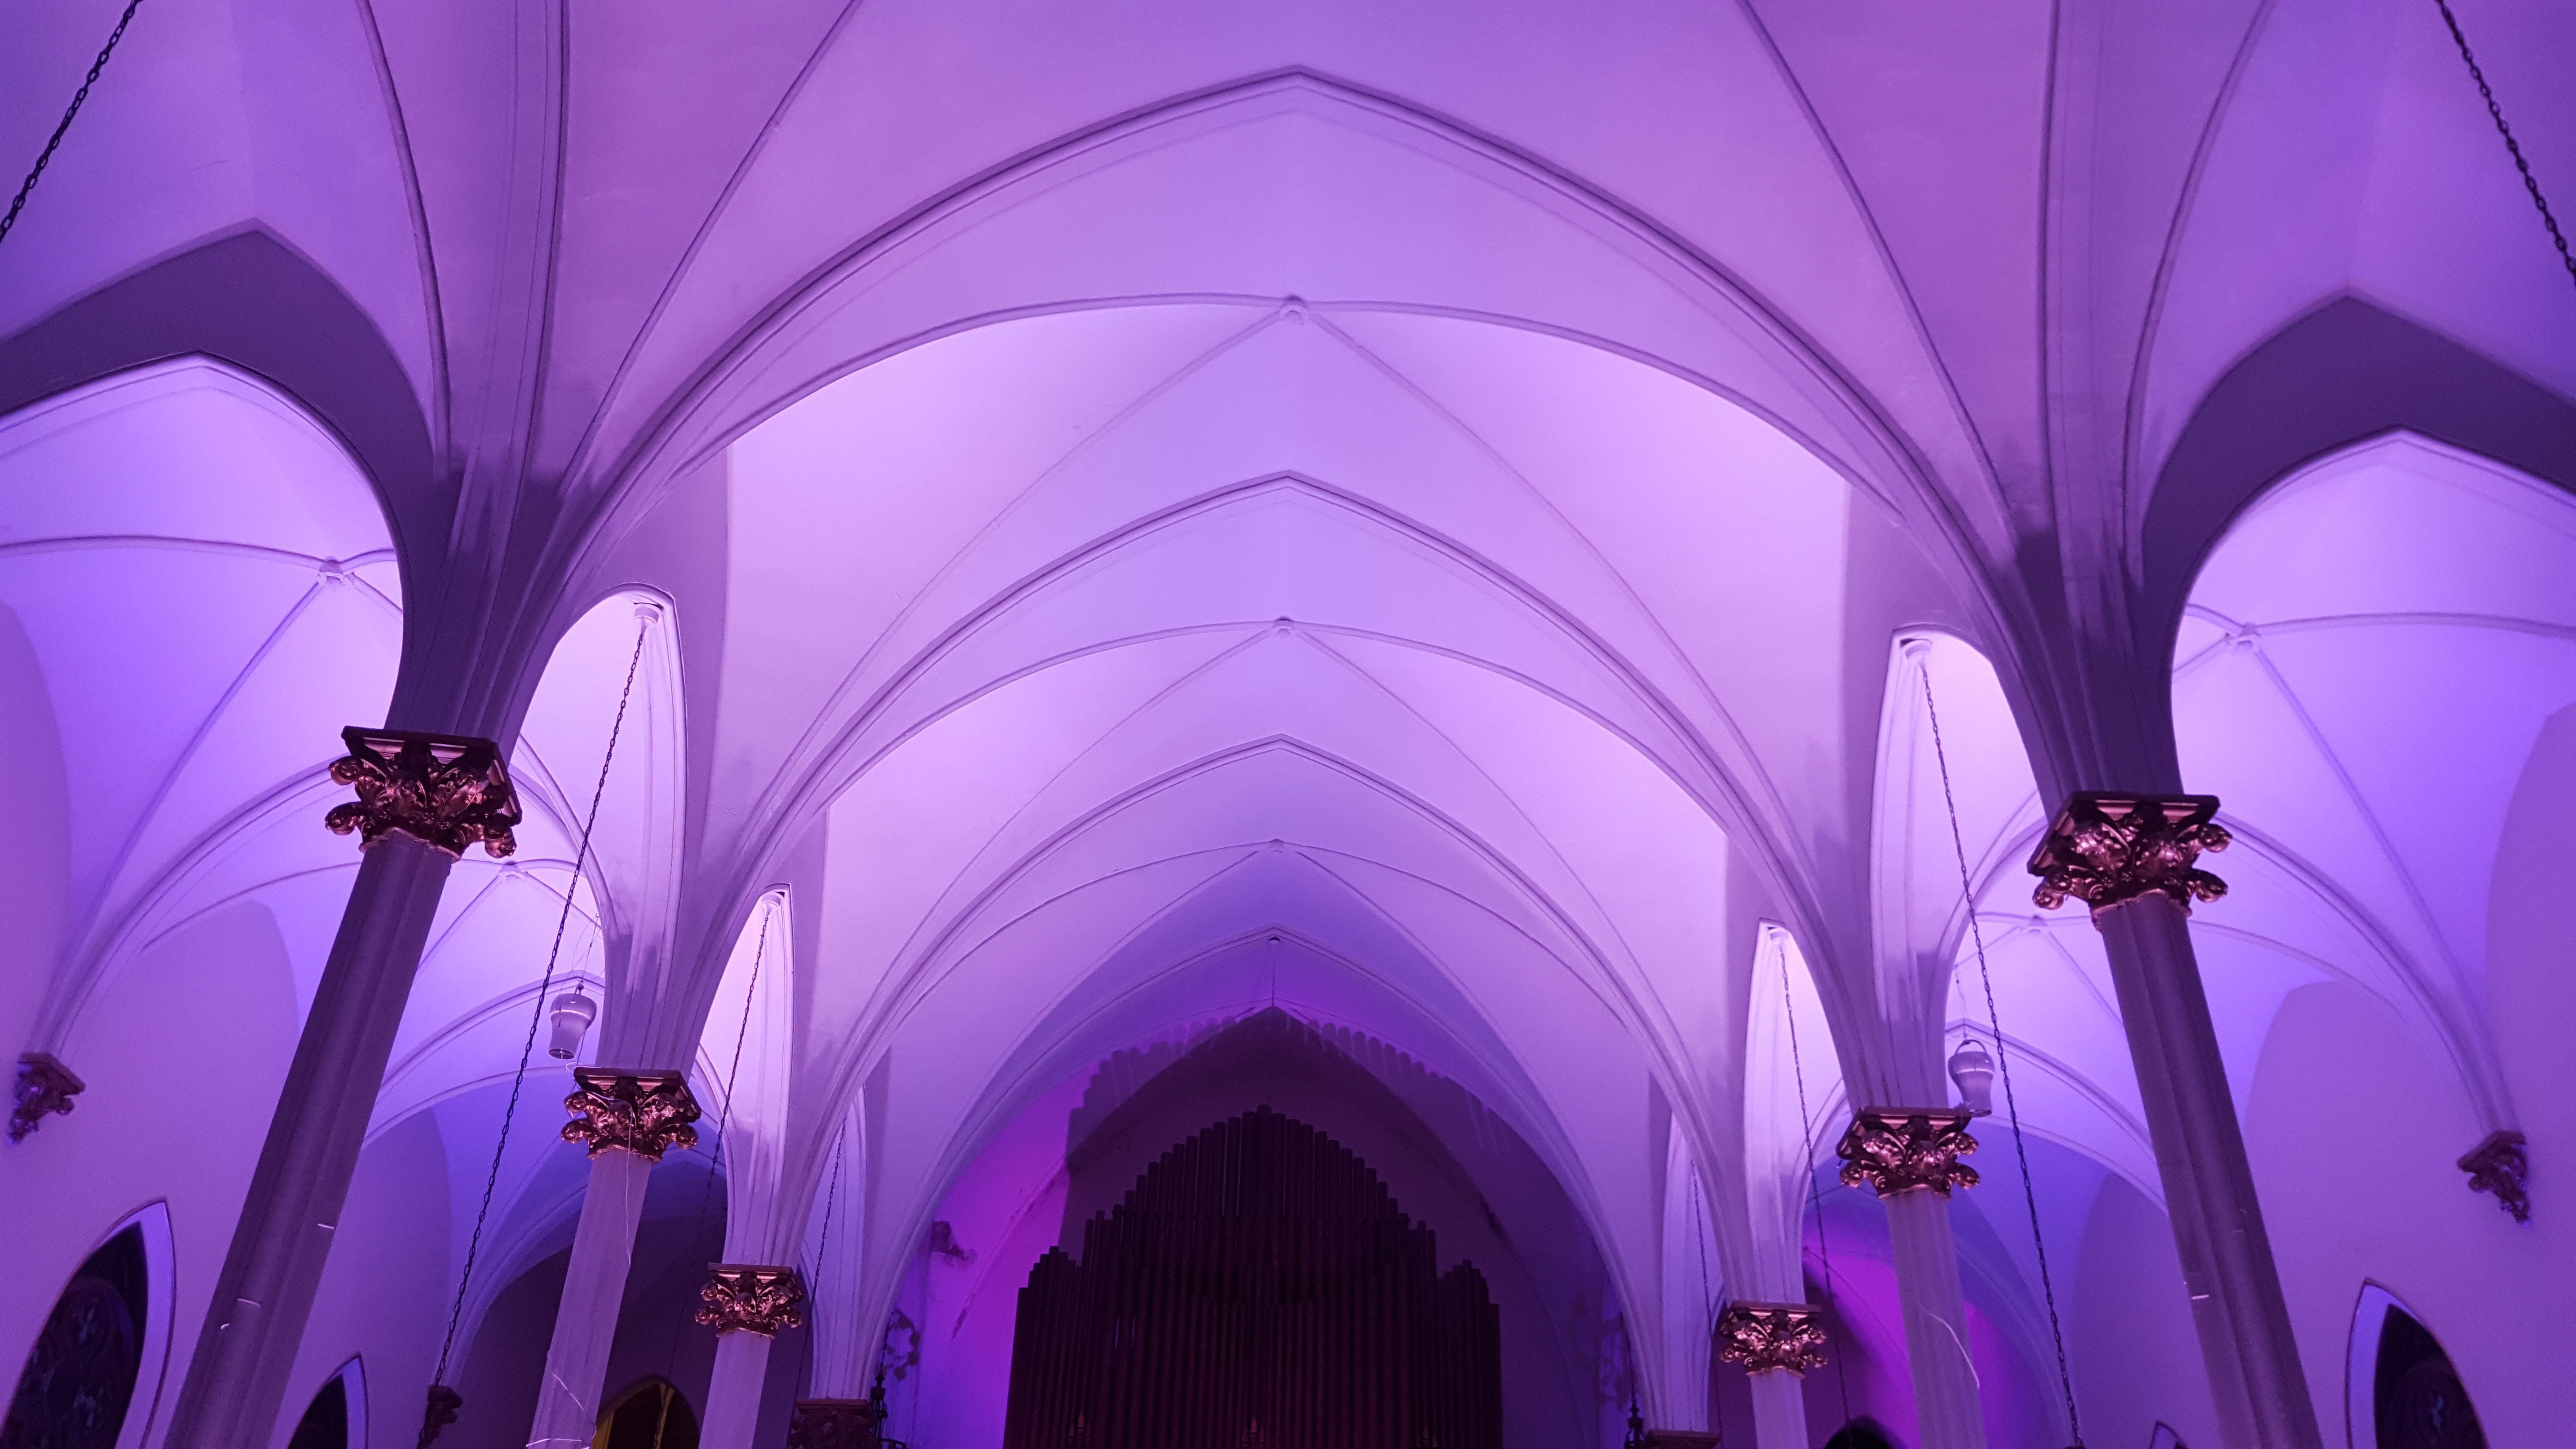 Lavender up lighting at Sacred Heart